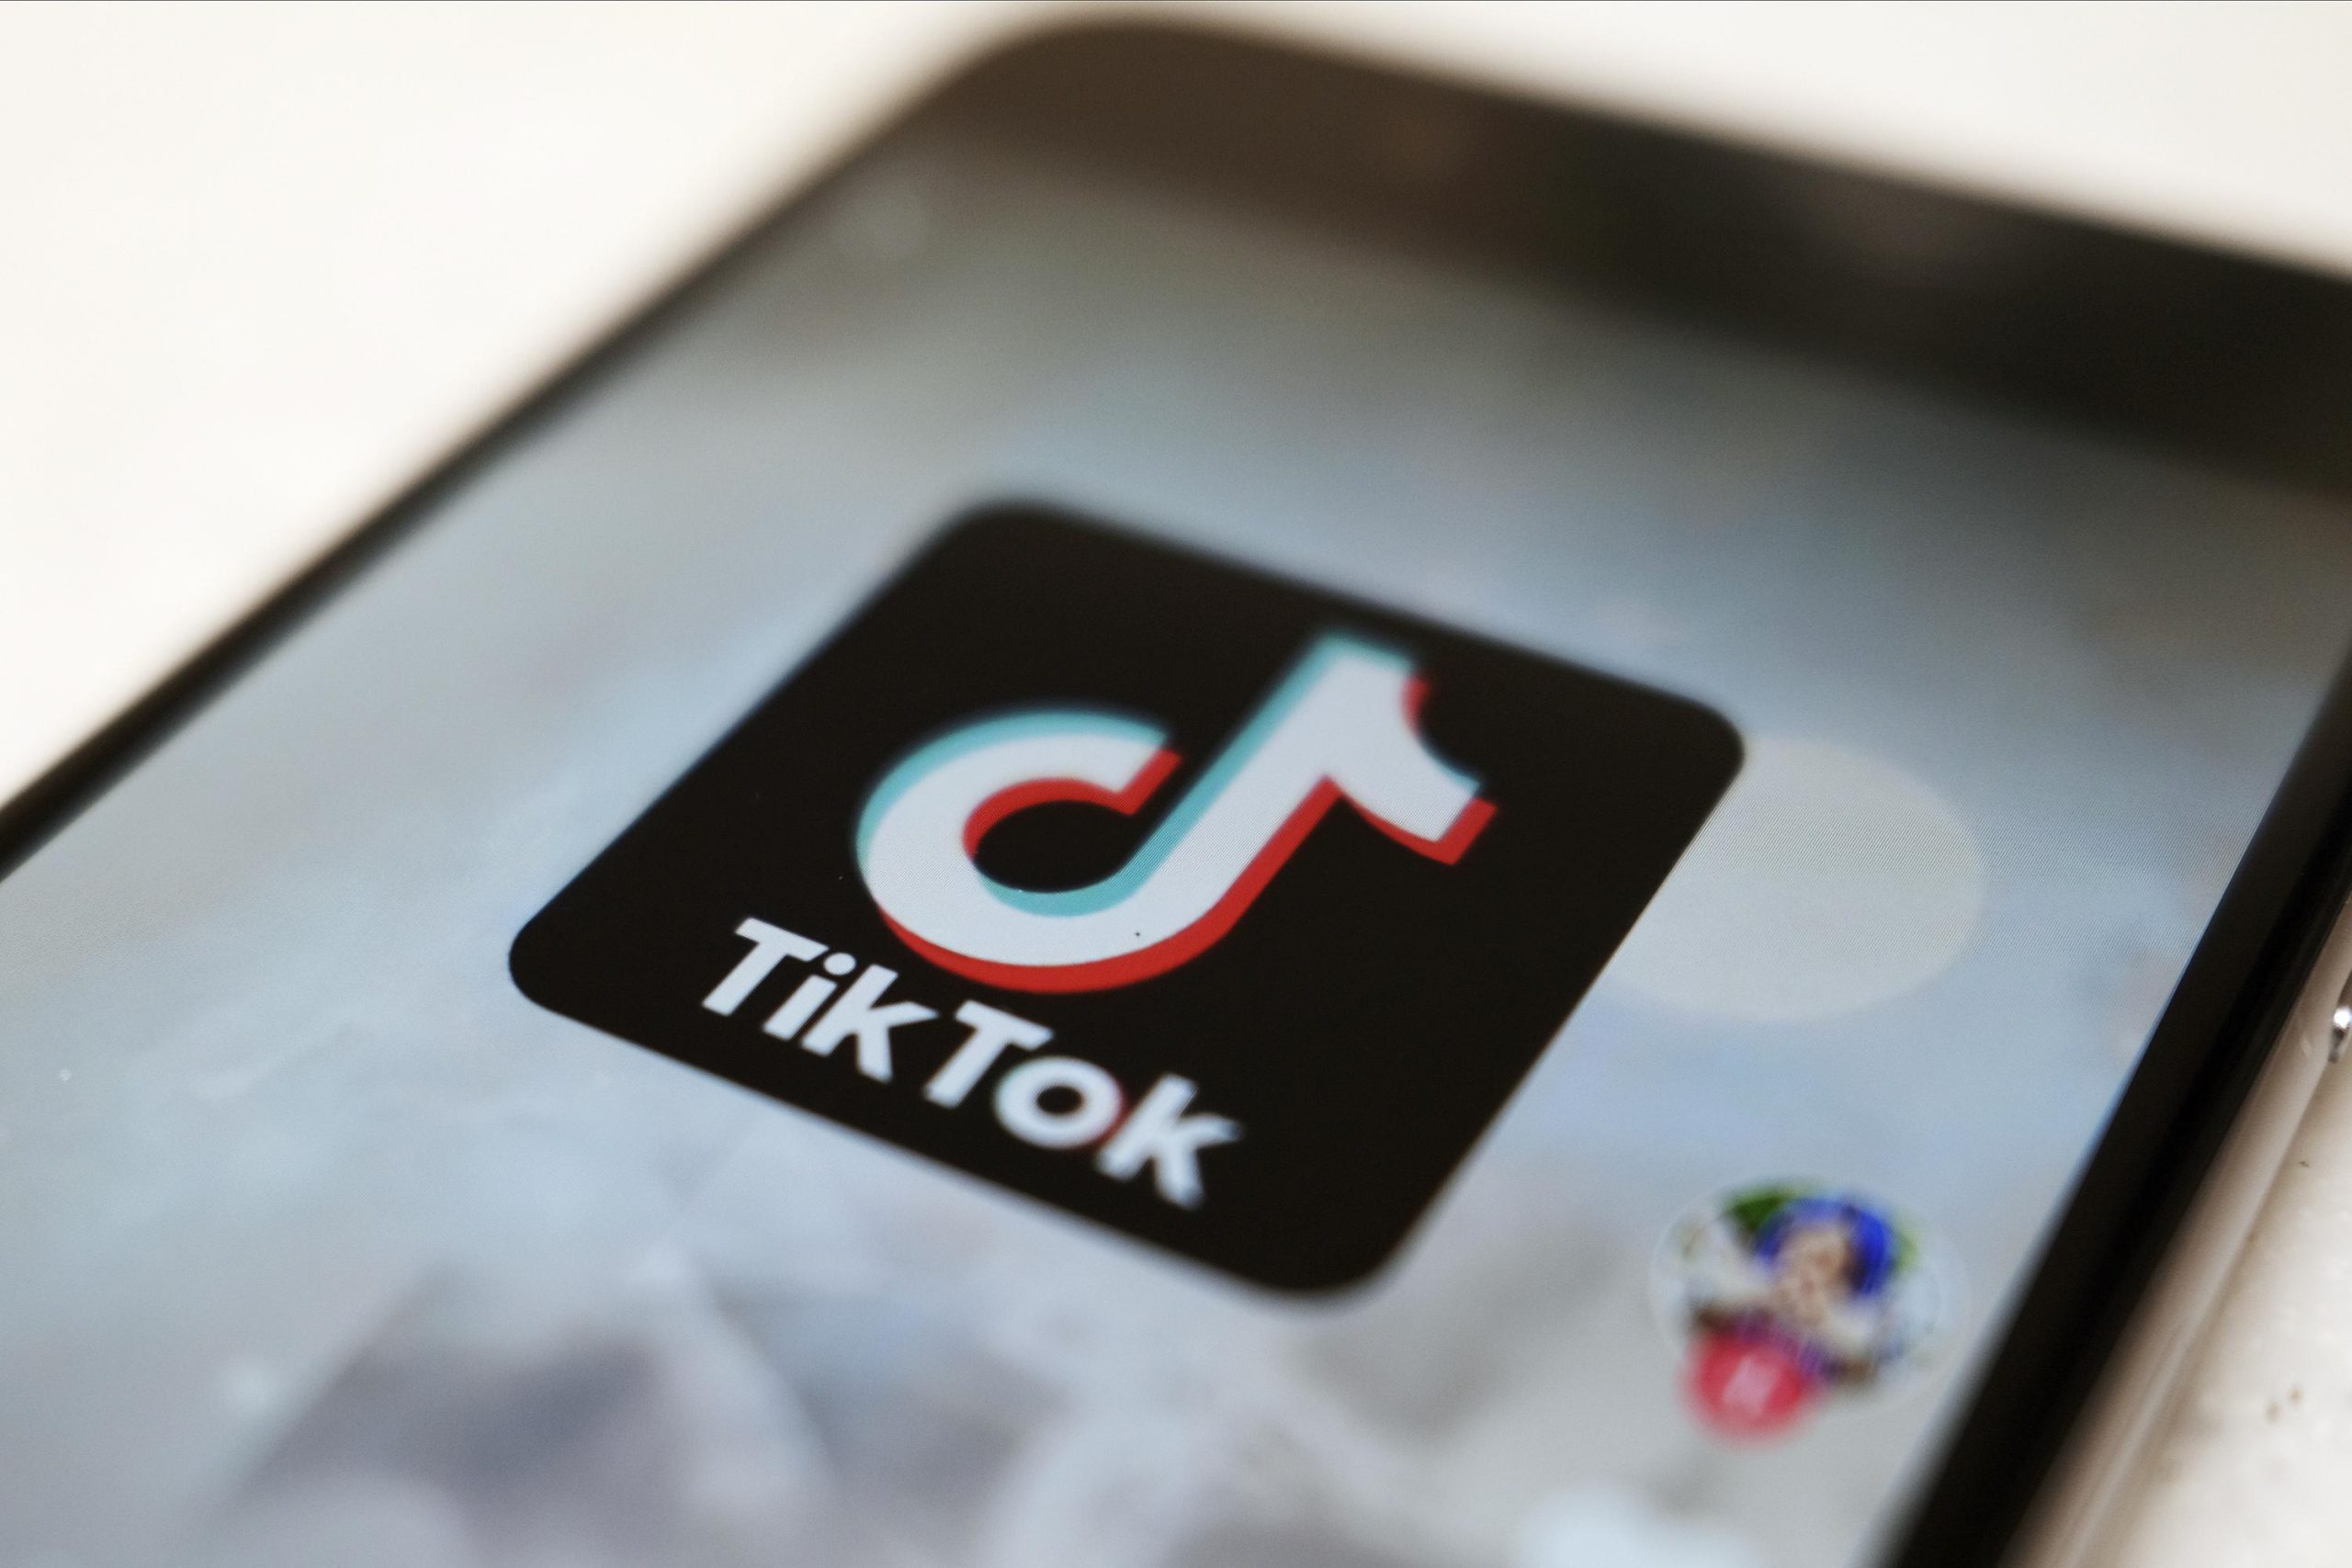 Netflix e TikTok vietano i servizi in Russia per evitare la repressione

